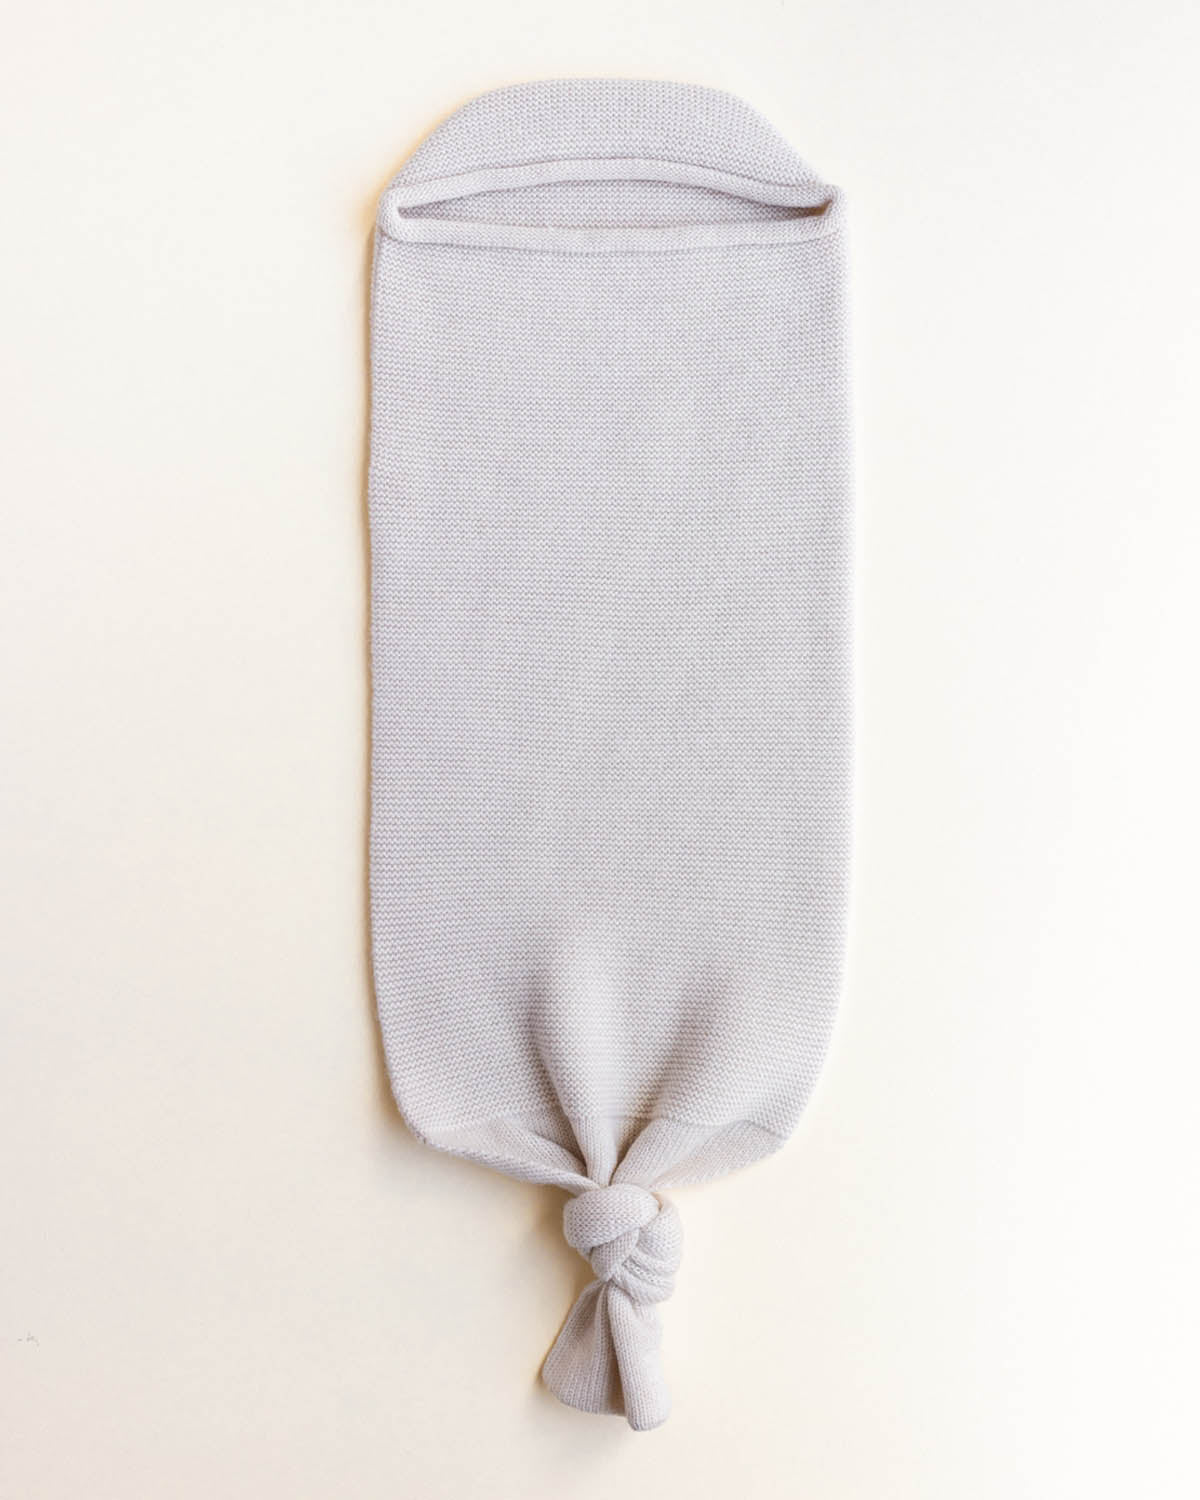 Hvid - swaddle bag "Cocoon" | off white